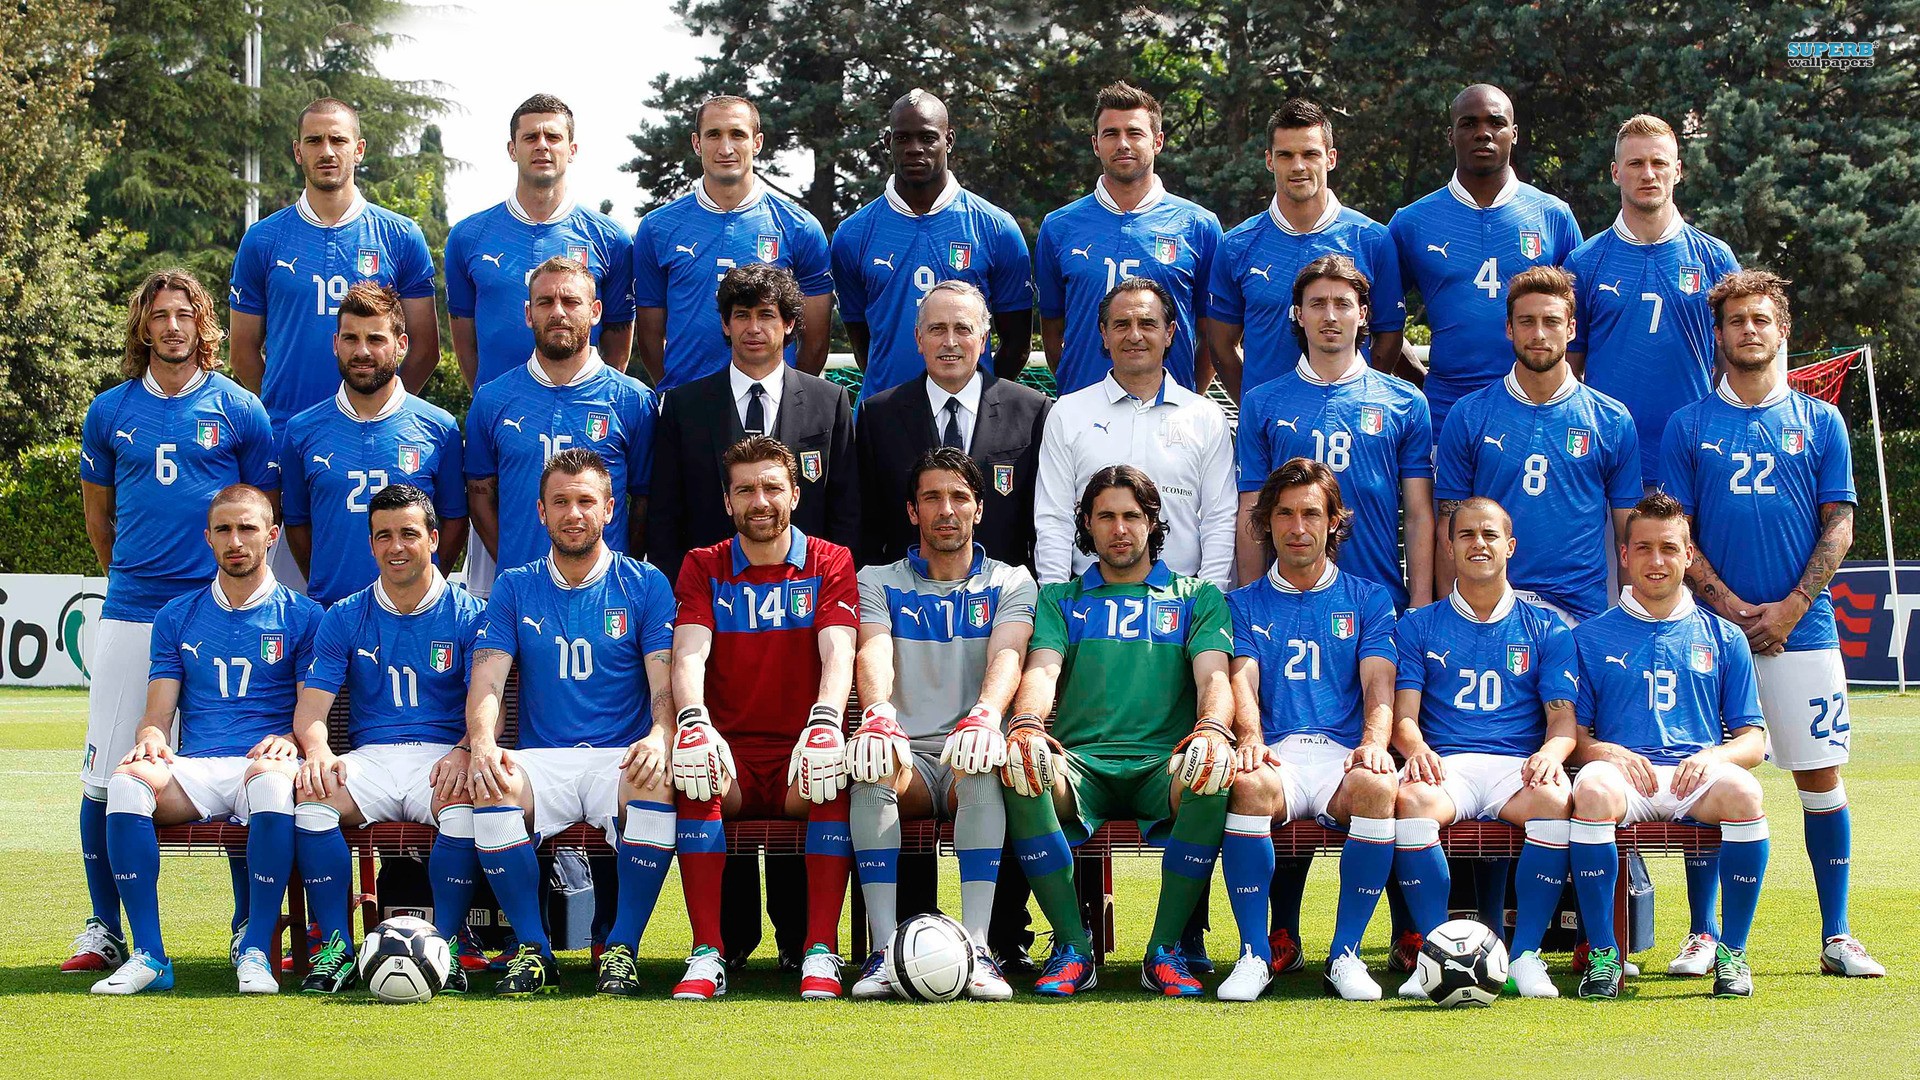 Wallpaper - Italian National Football Team 2012 , HD Wallpaper & Backgrounds